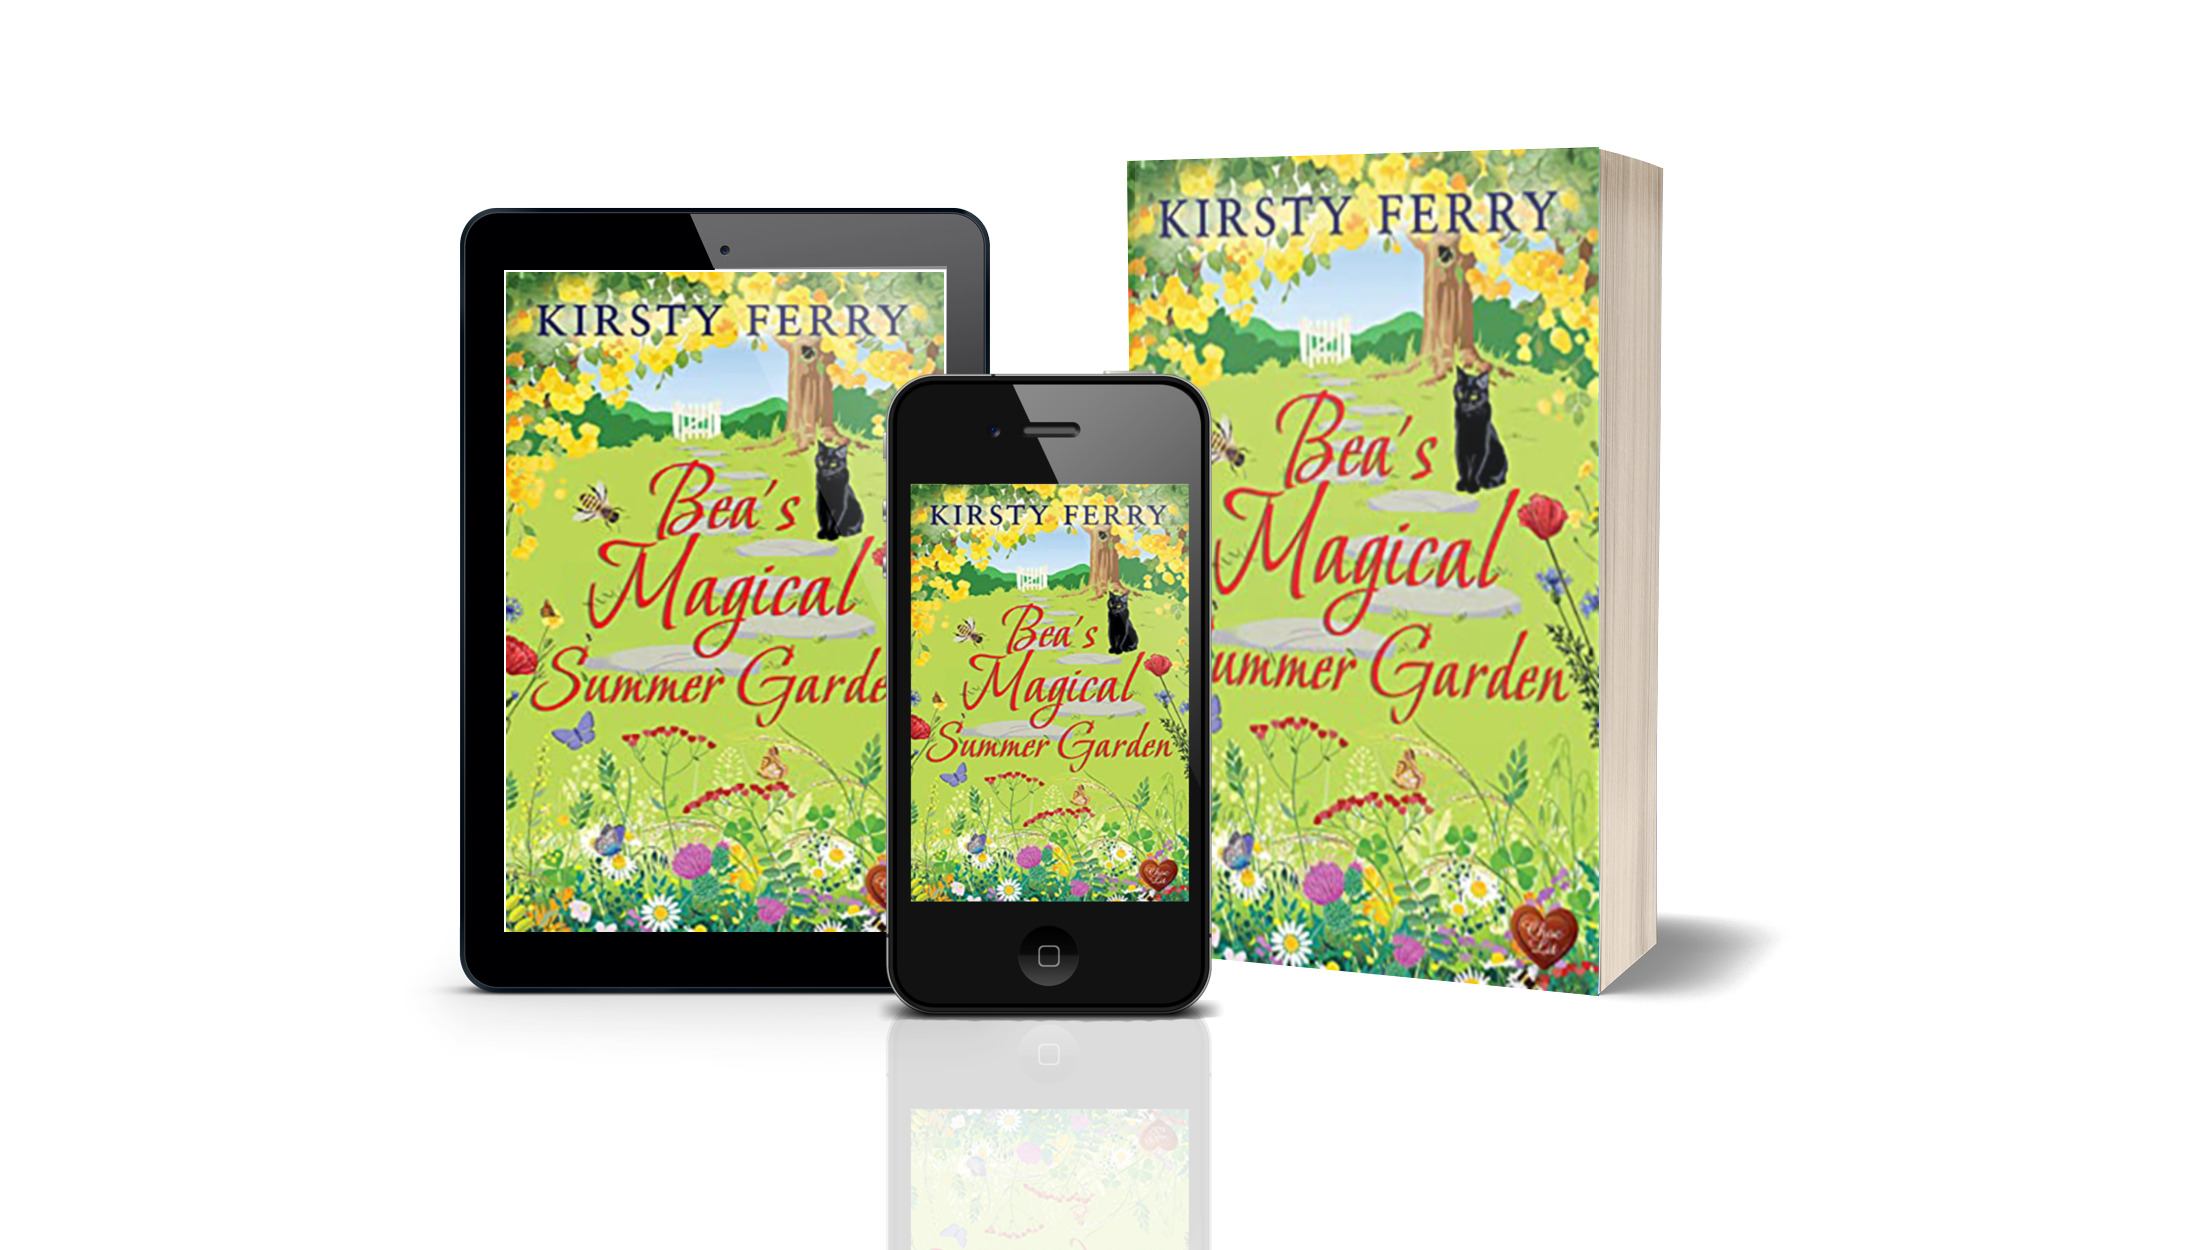 Kirsty Ferry – Bea’s Magical Summer Garden